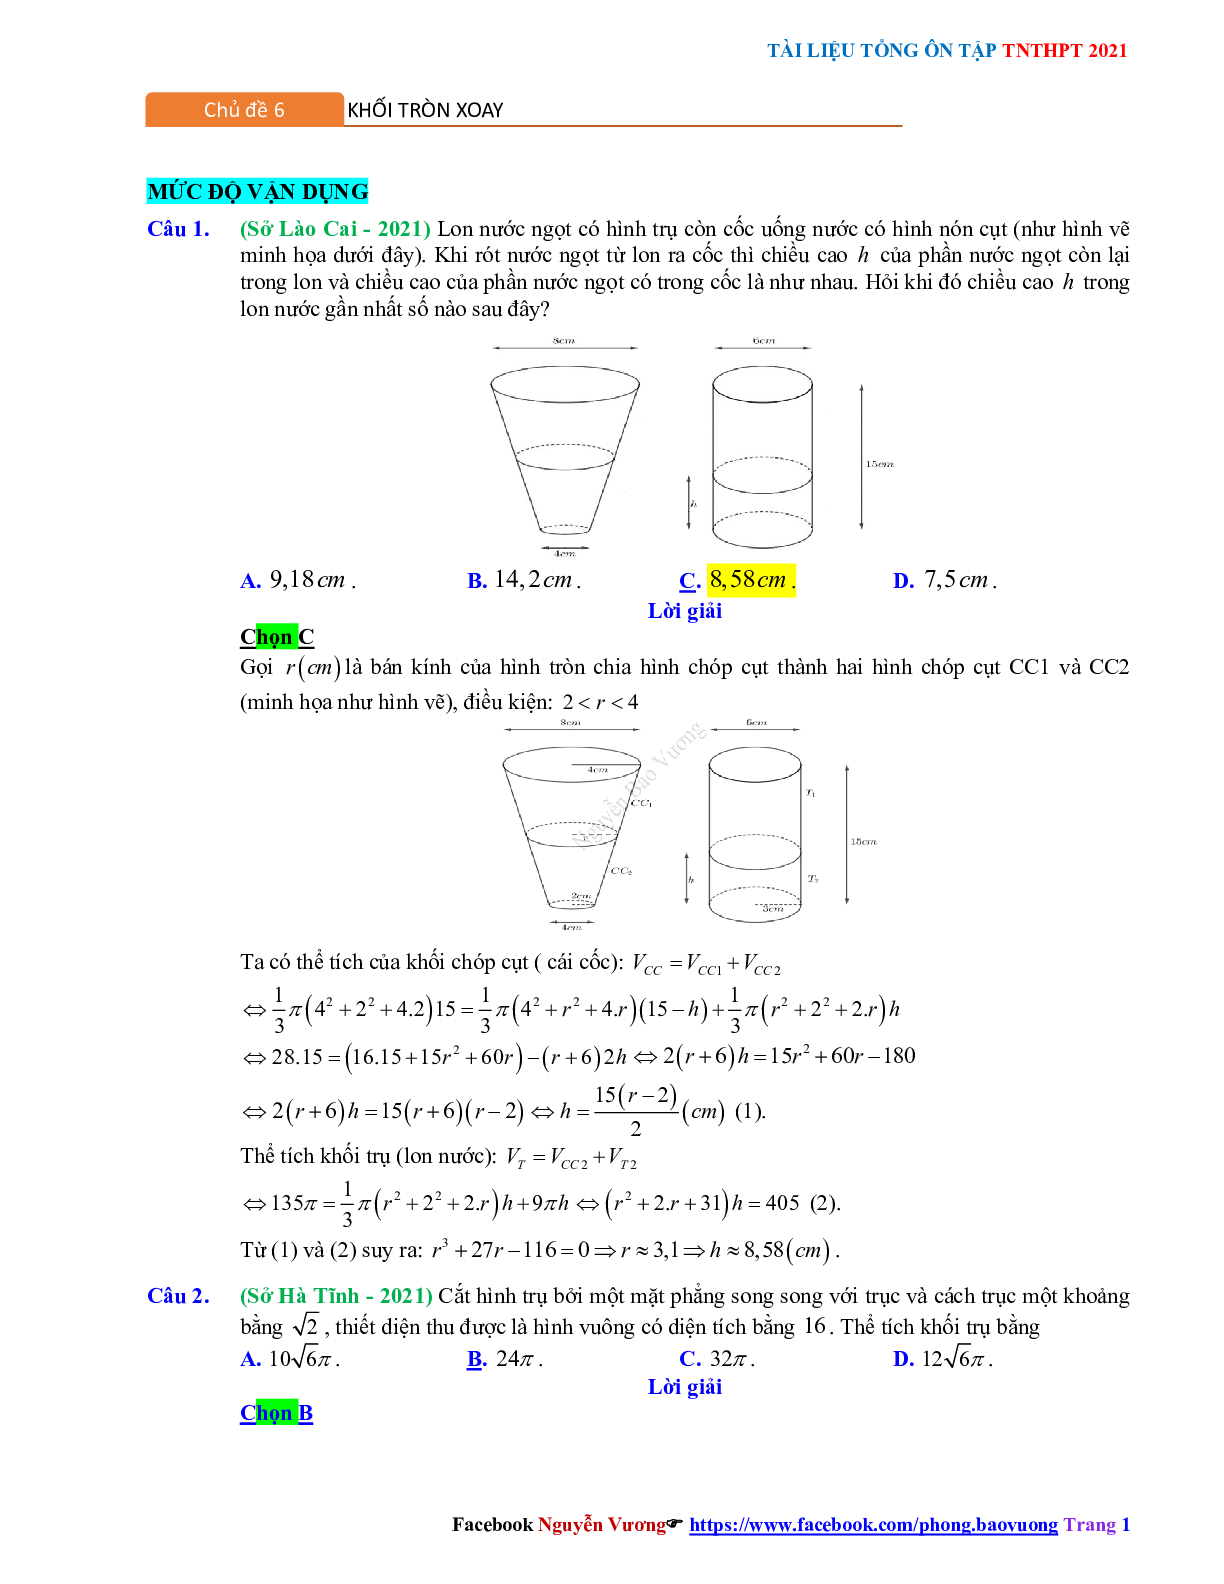 Trắc nghiệm Ôn thi THPT QG Toán 12: Đáp án khối tròn xoay mức độ vận dụng (trang 1)